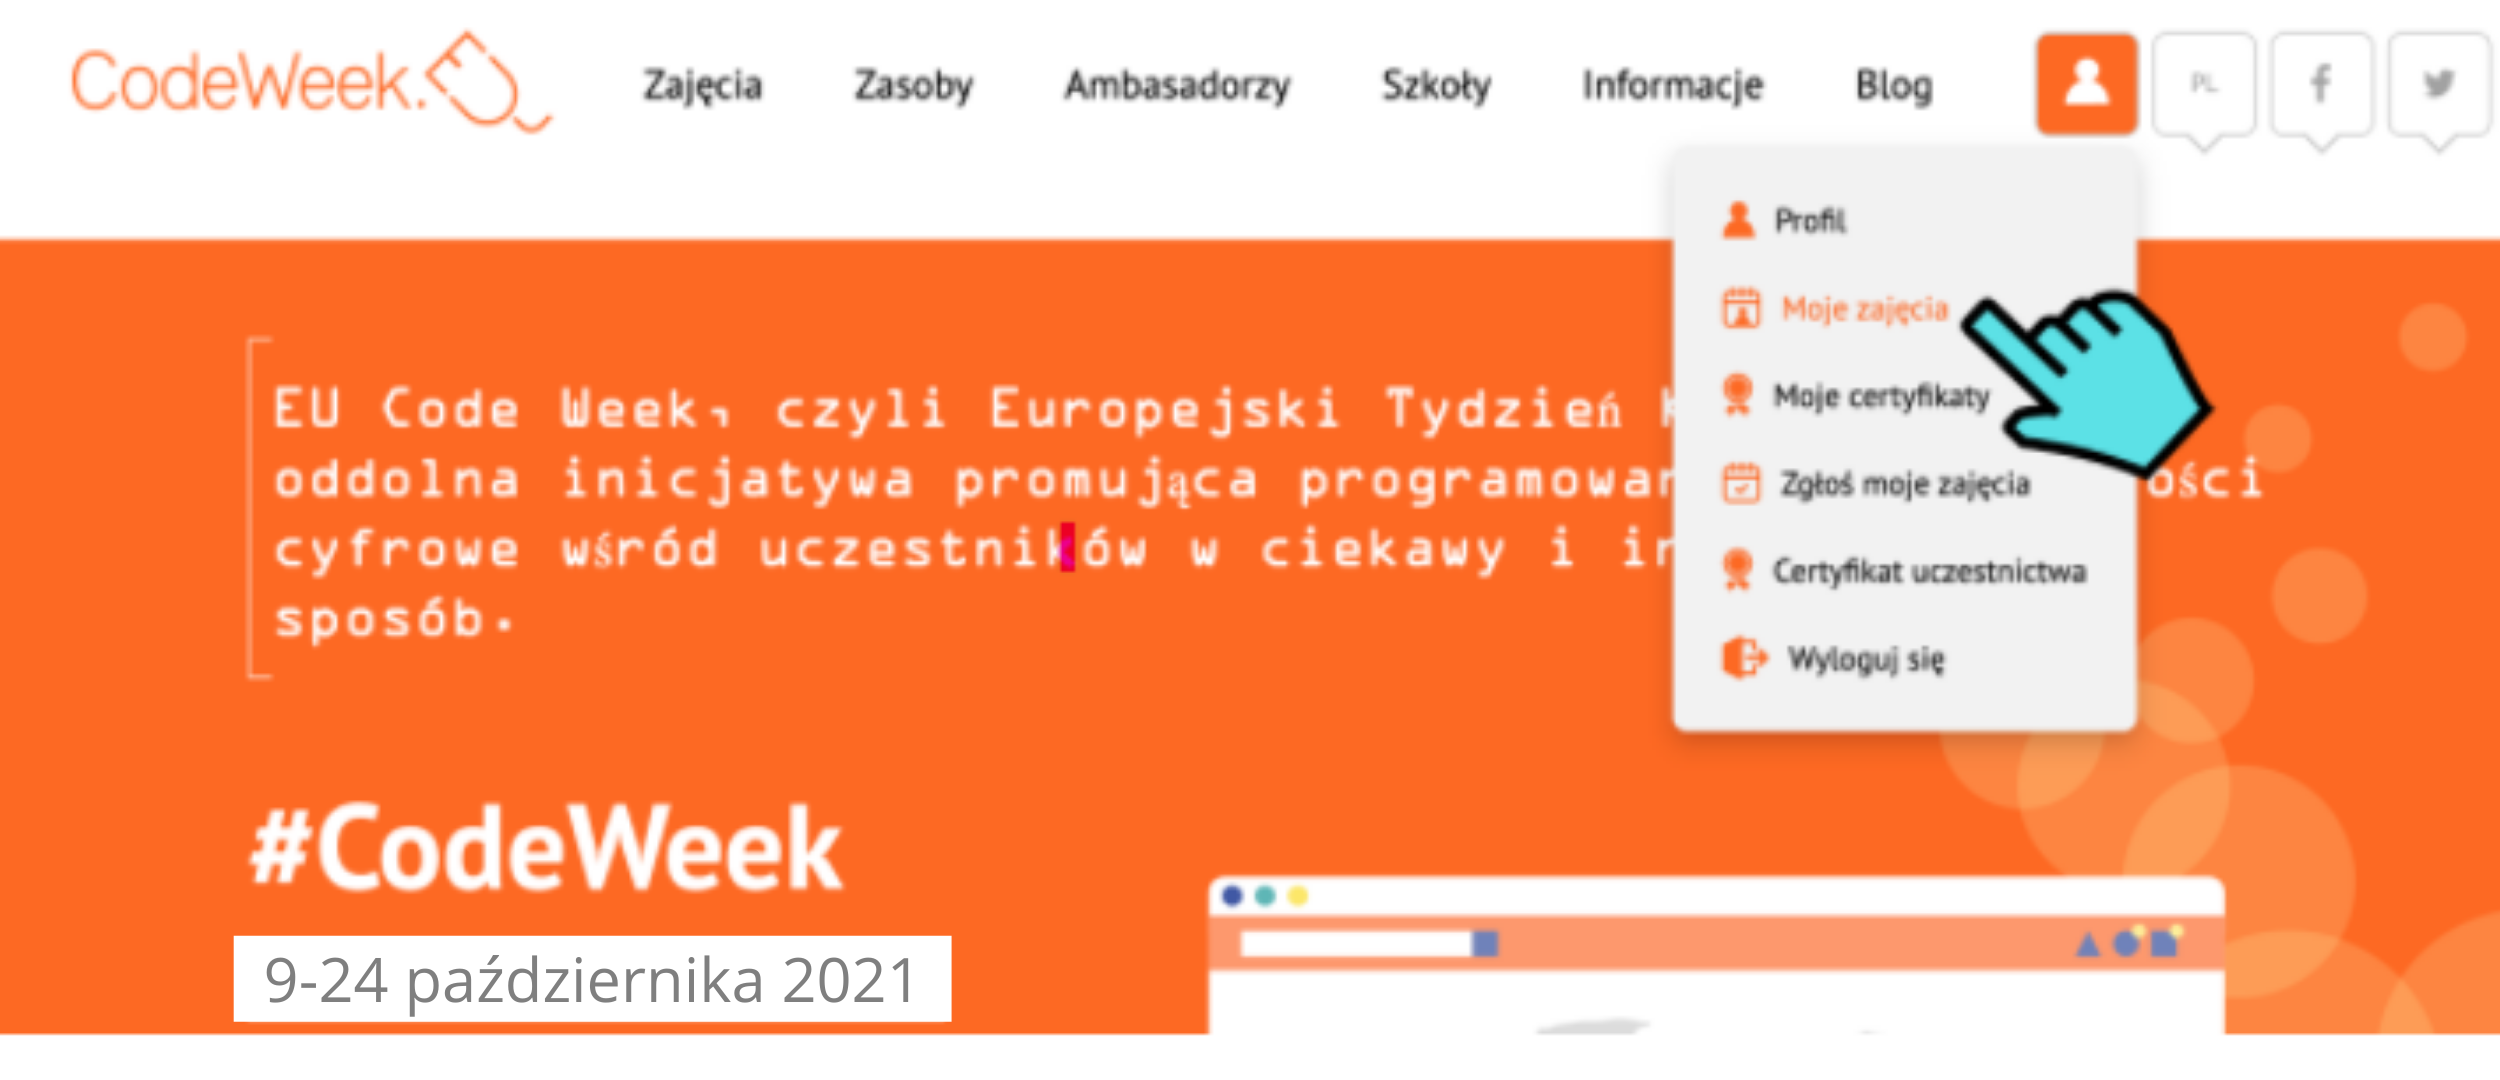 Grafika przedstawia stronę startową codeweek.eu z rozwiniętym menu opcji. Niebieski symbol kursora myszy wskazuje na zakładkę “Moje zajęcia”, która jest podświetlona na pomarańczowo.